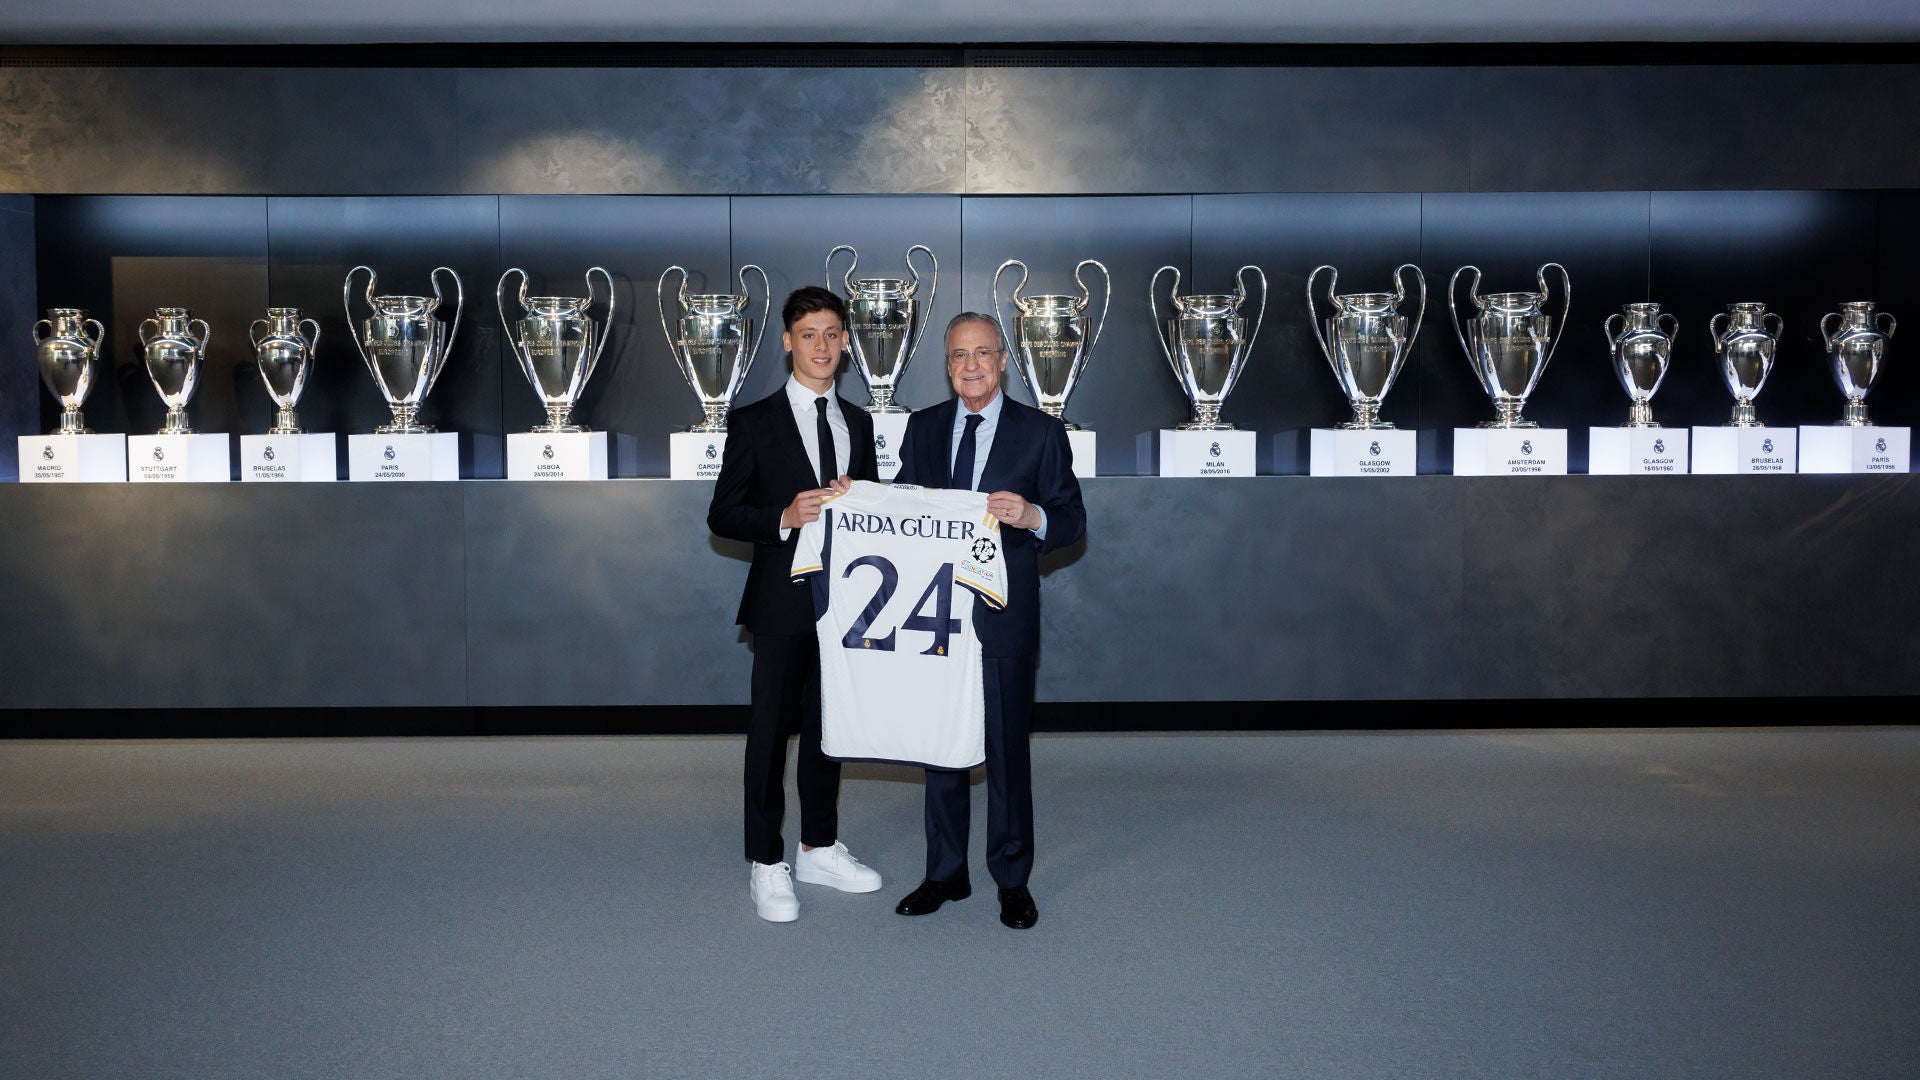 Arda Güler, presentado como nuevo jugador del Real Madrid